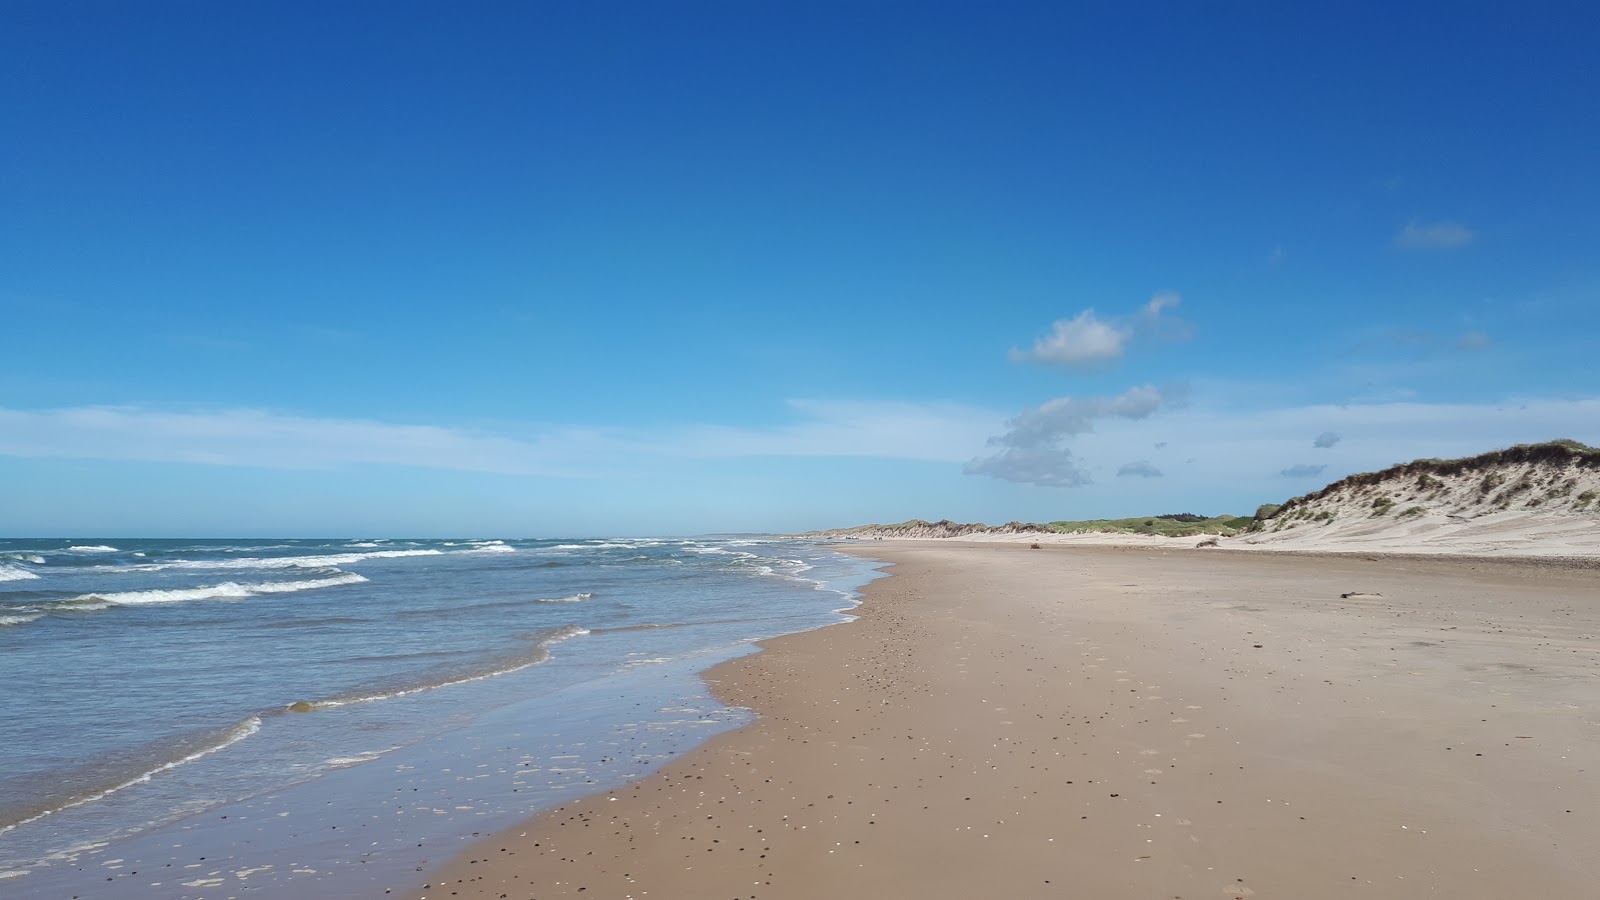 Zdjęcie Tversted Beach z powierzchnią jasny piasek